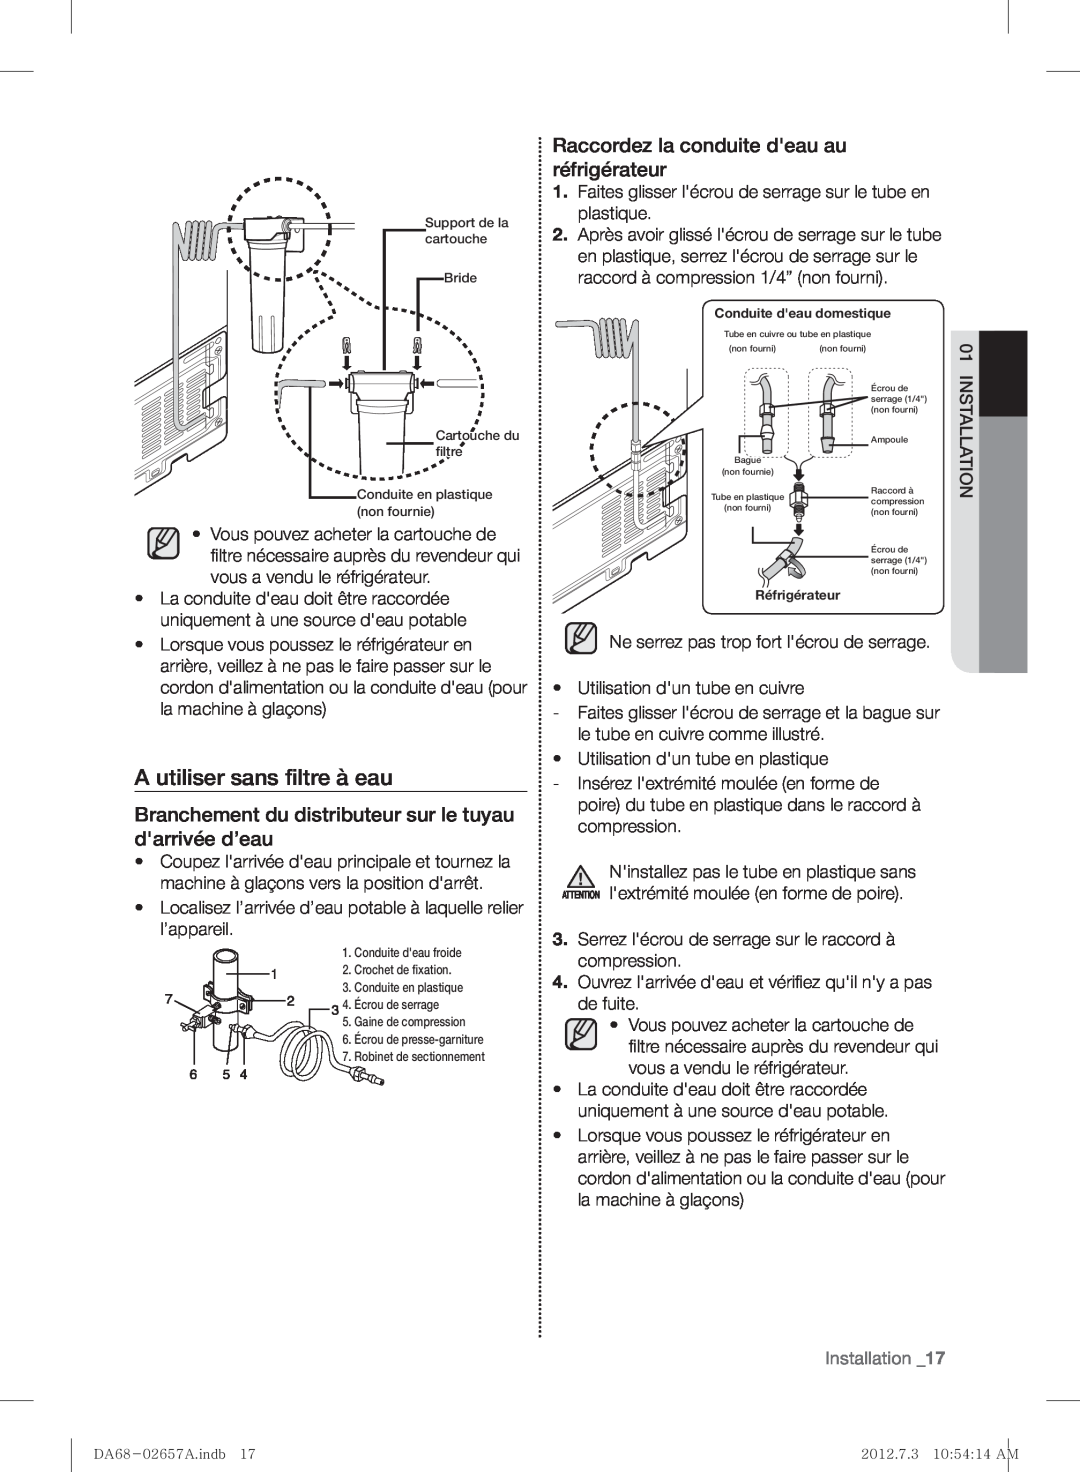 Samsung RF221NCTABC A utiliser sans ﬁltre à eau, Branchement du distributeur sur le tuyau darrivée d’eau, Installation 